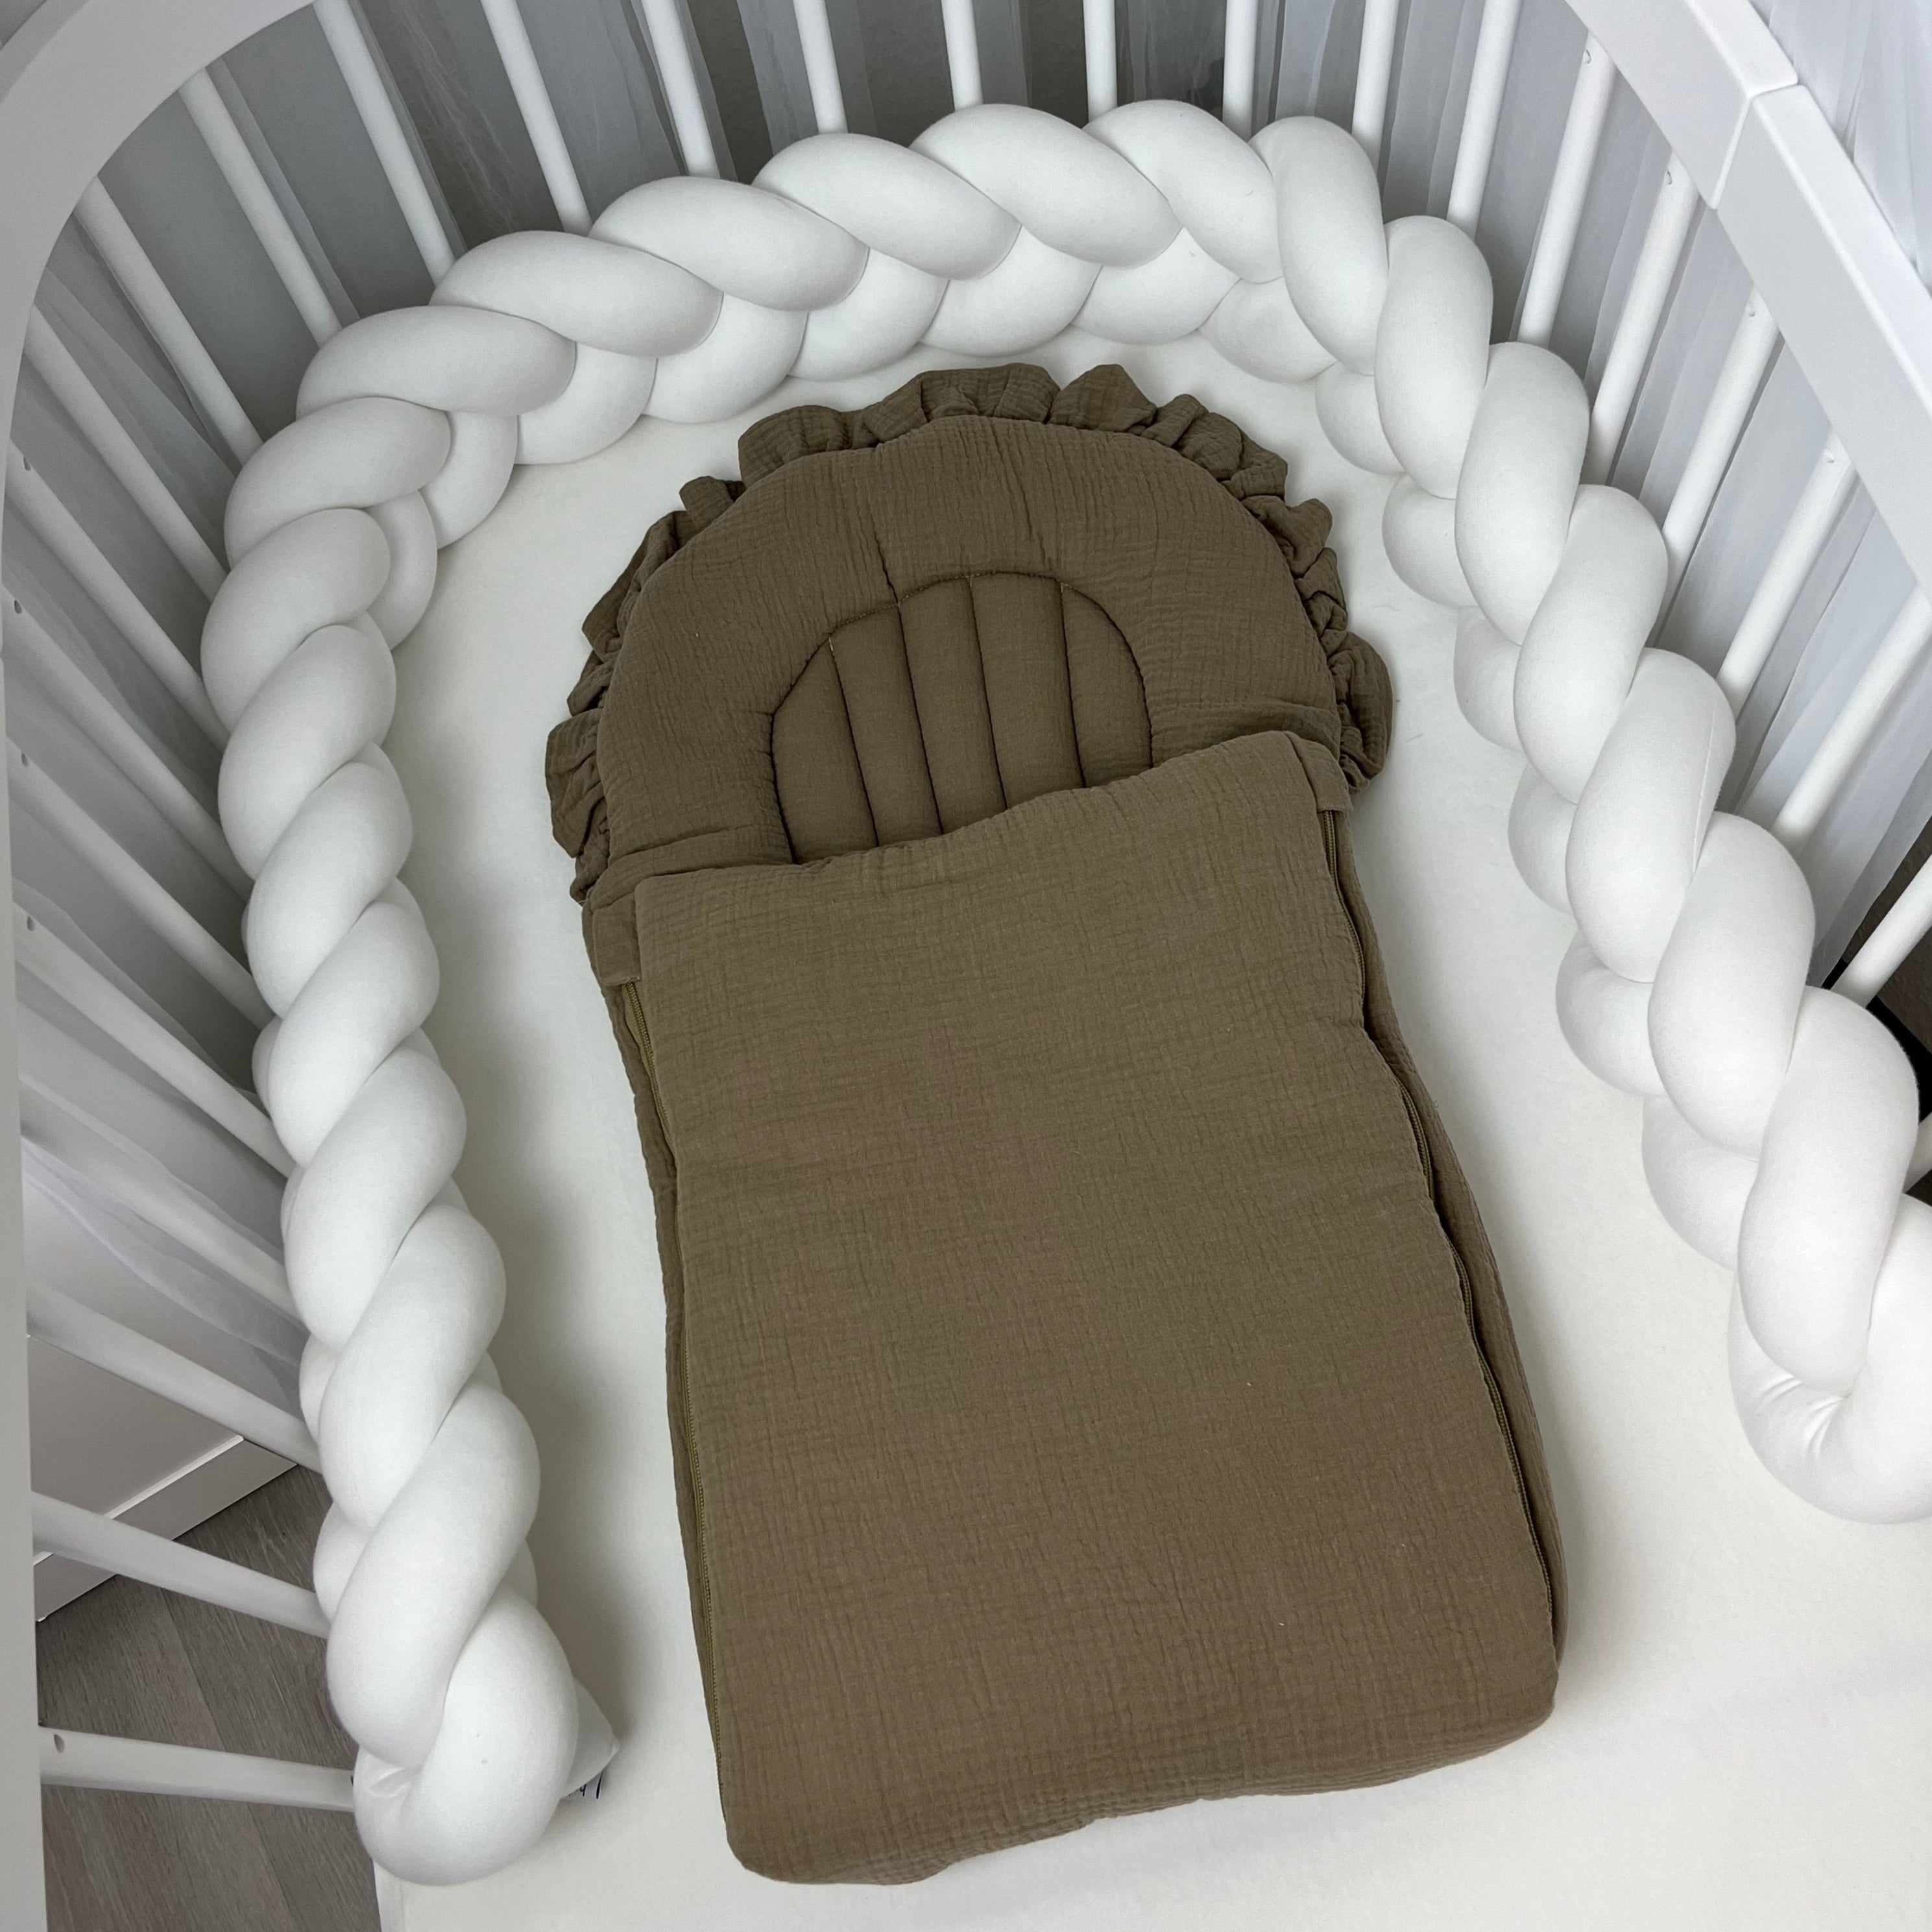 Flacher Babyschlafsack mit Wellenschnitt & Rüschen | Musselin | Beige Gr. S & XL